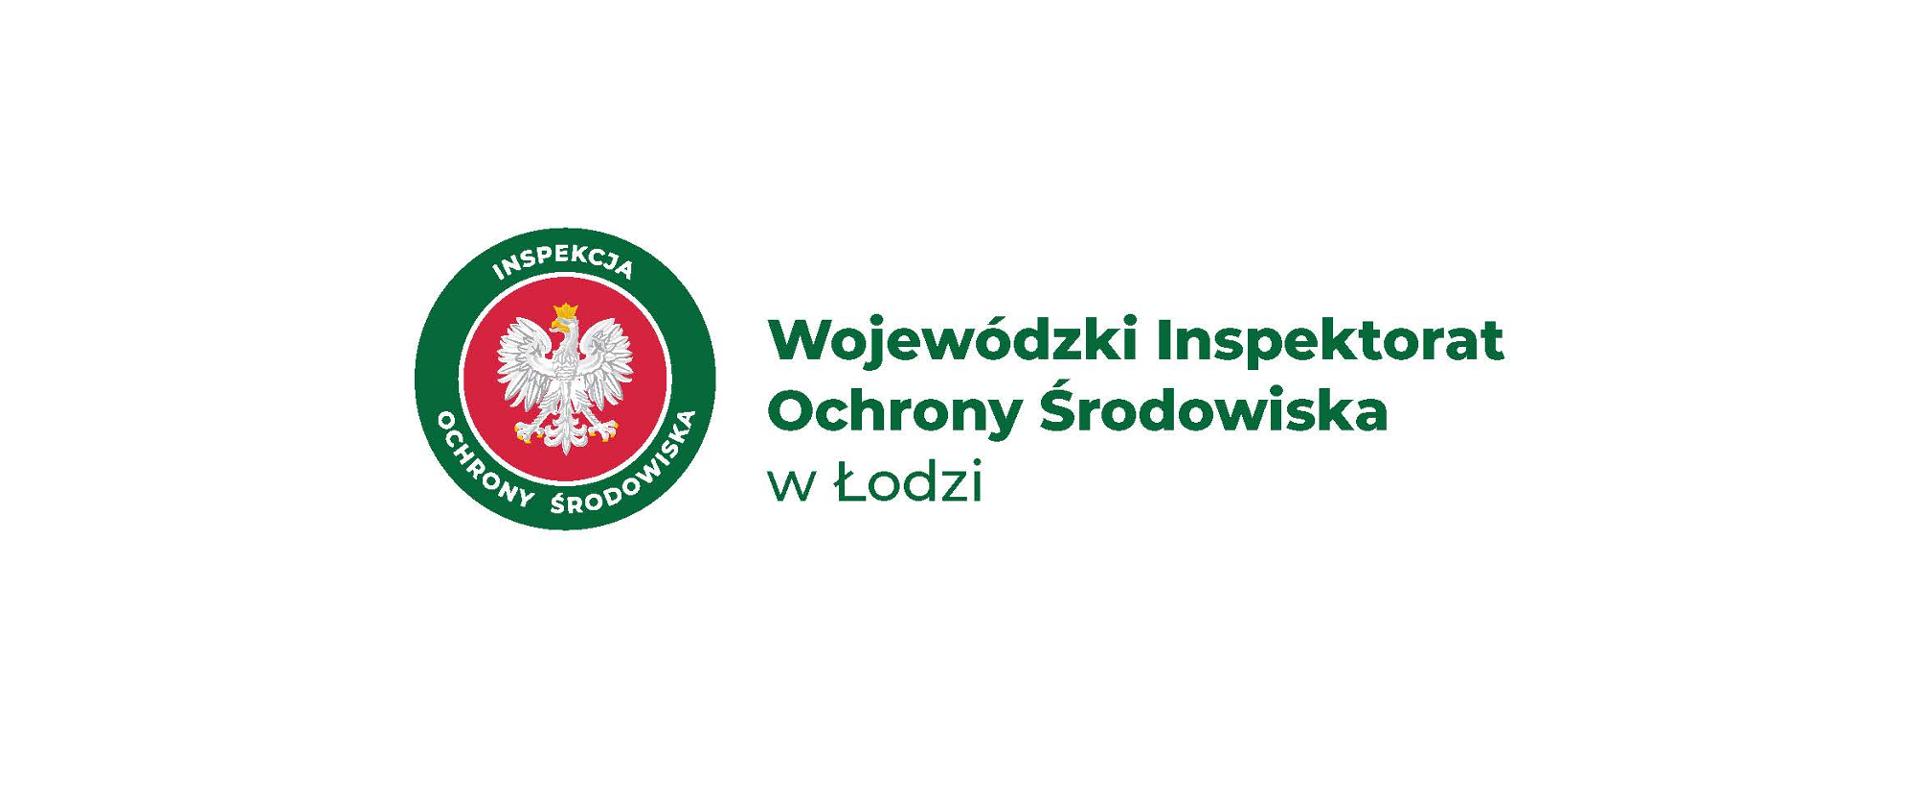 Wojewódzki Inspektorat Ochrony Środowiska w Łodzi - logo 